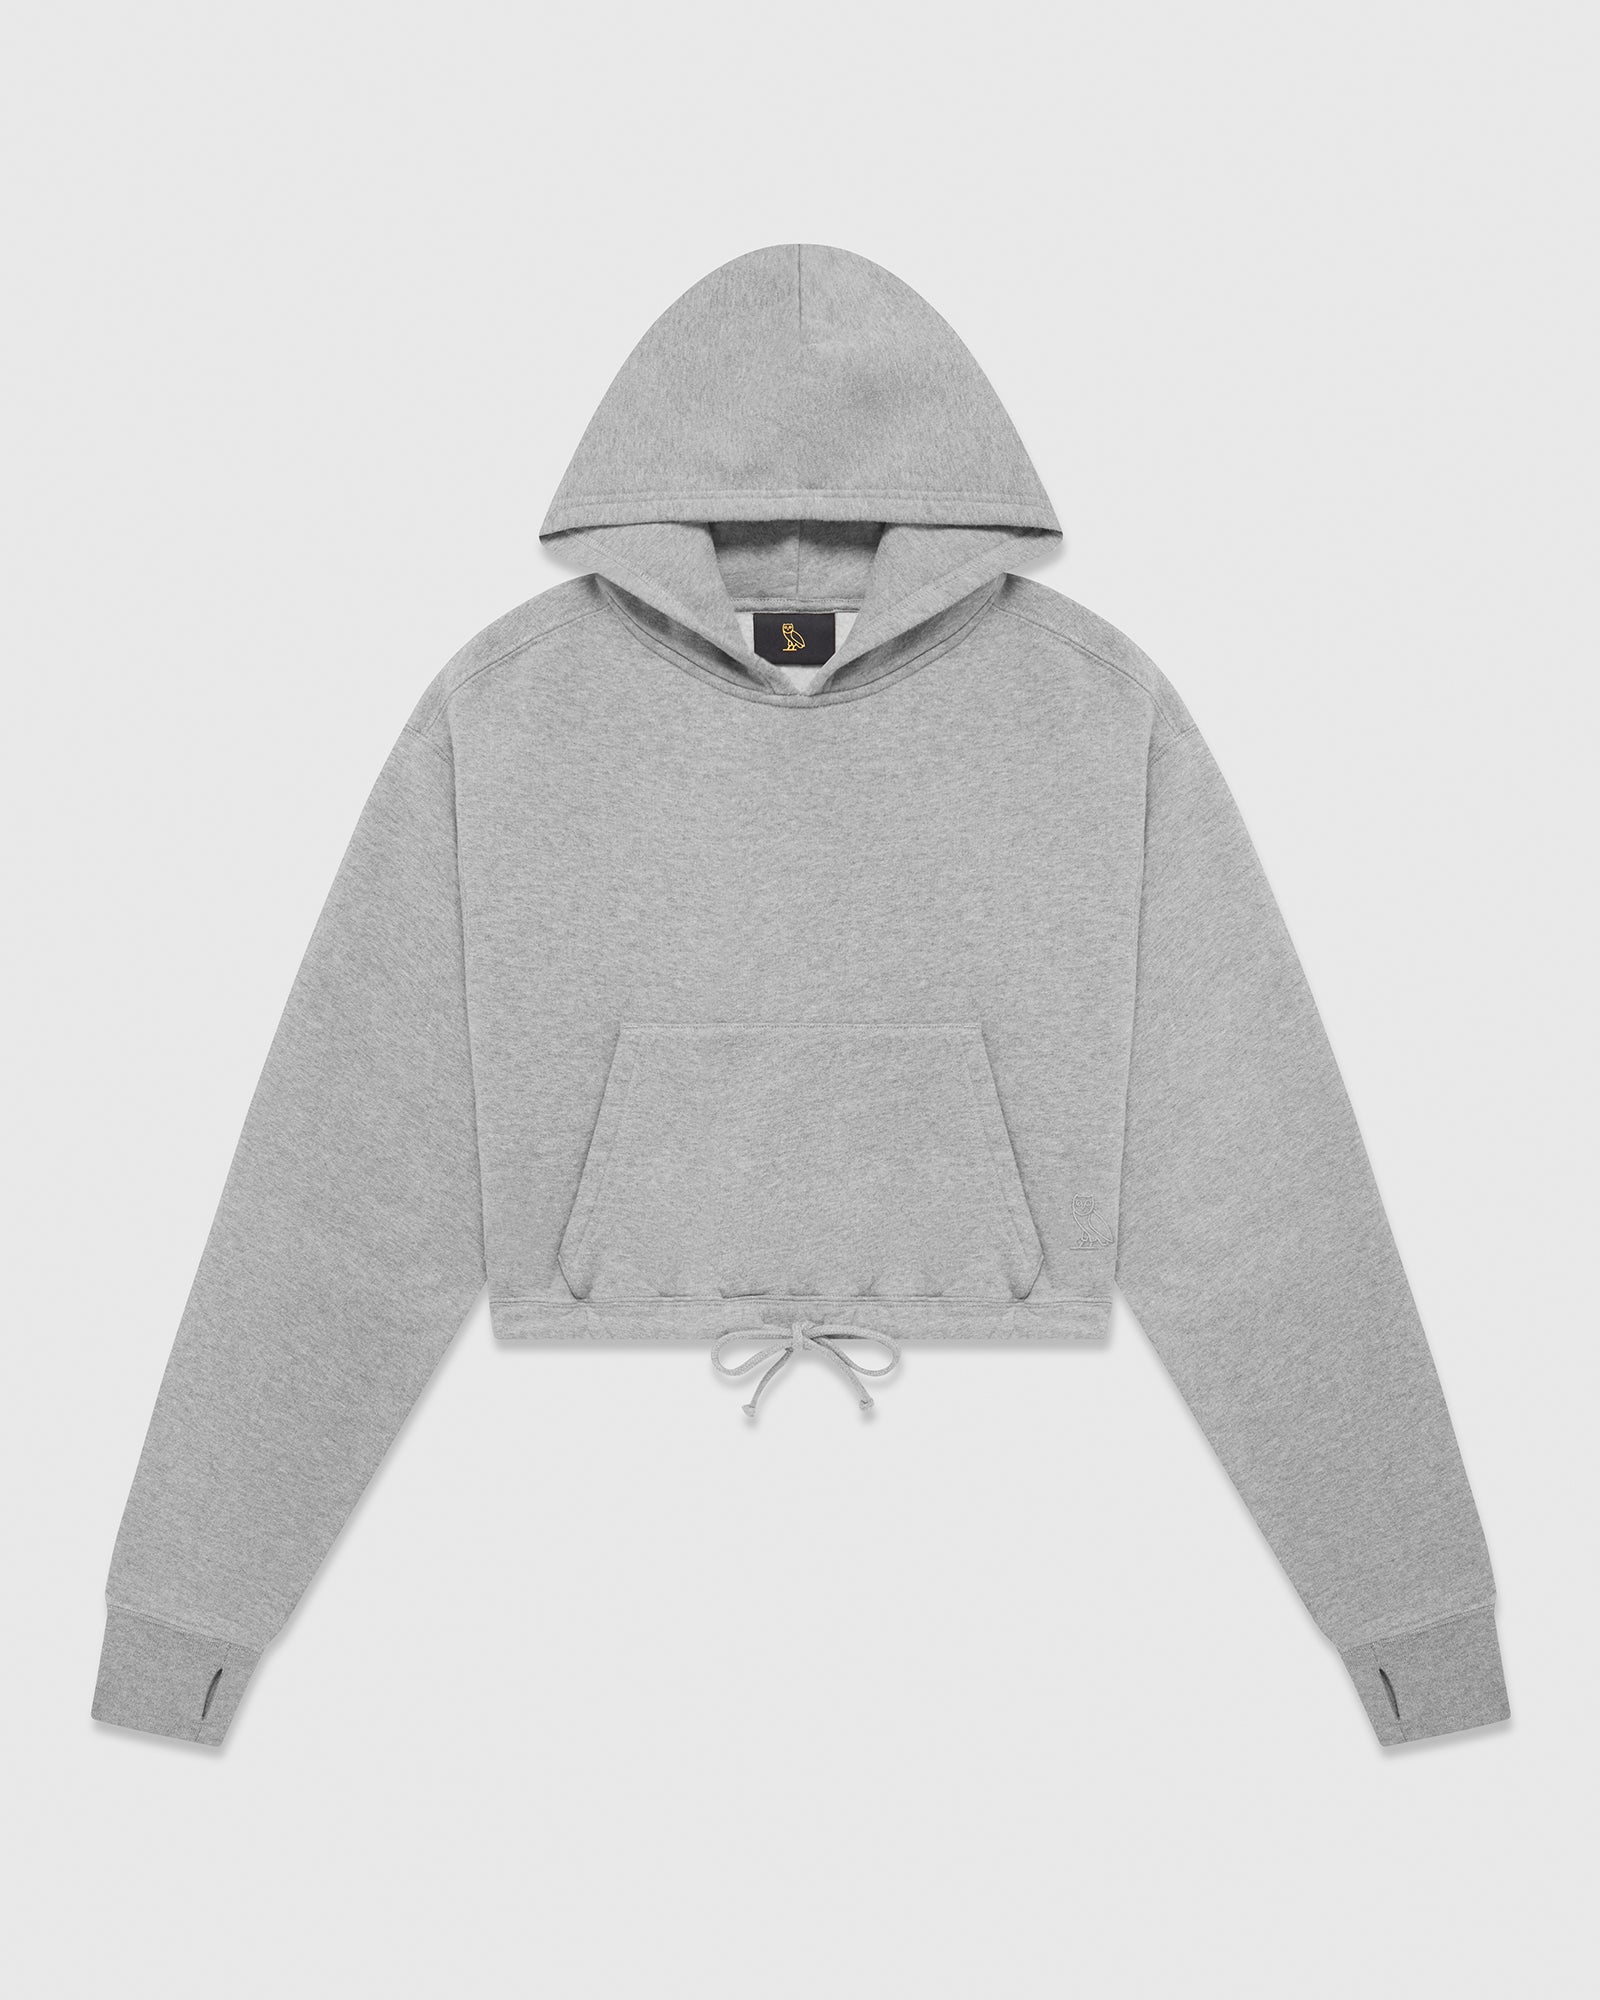 Buy Colsie women hooded heather crop sweatshirt grey Online